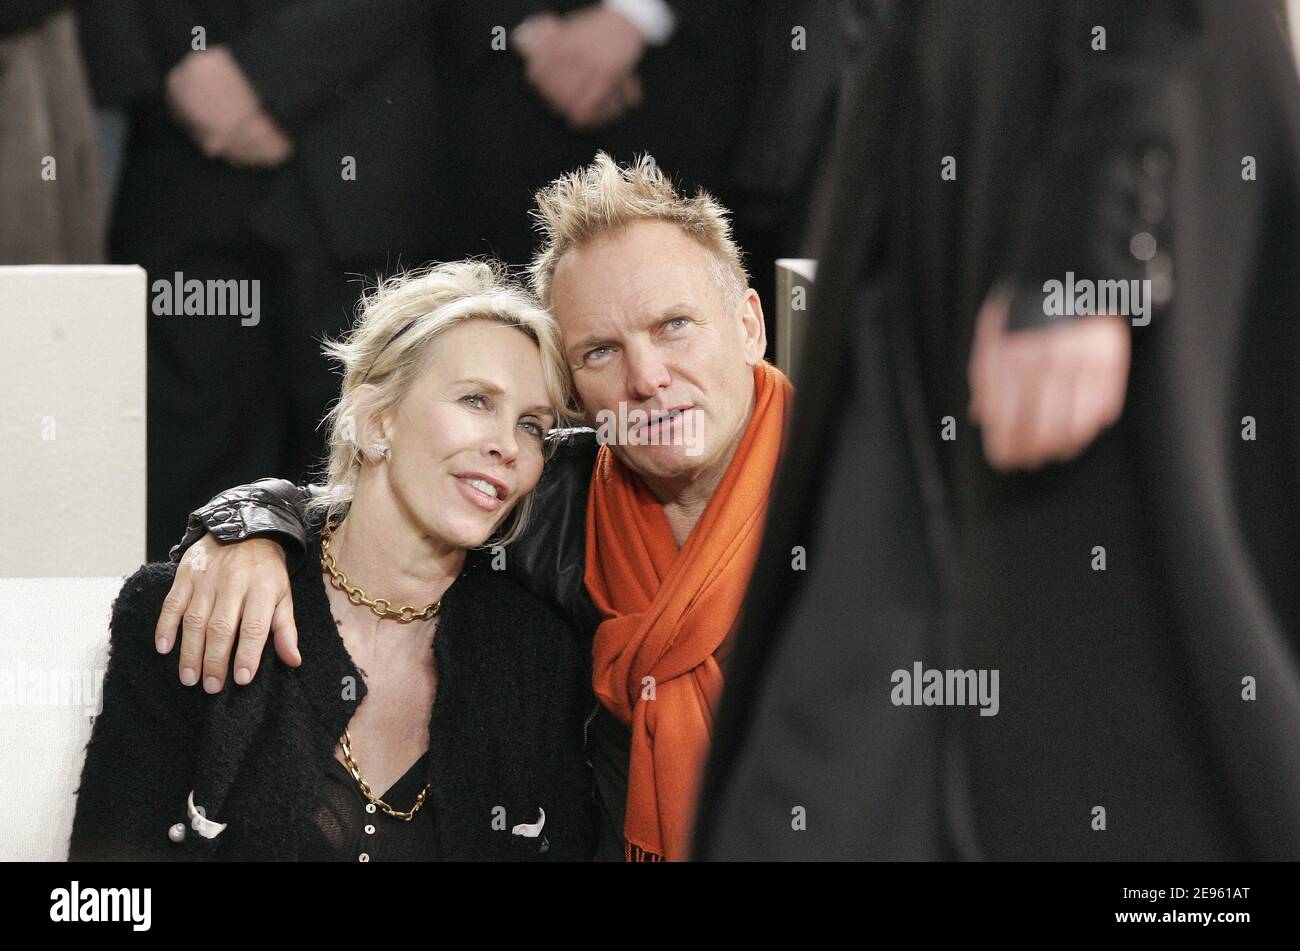 La cantante britannica Sting e sua moglie Trudie Styler partecipano alla sfilata di moda "Ready-to-wear" di Chanel, autunno-inverno 2006-2007, progettata dal creatore tedesco Karl Lagerfeld a Parigi, Francia, il 2 marzo 2006. Foto di Orban-Taamallah-Zabulon/ABACAPRESS.COM Foto Stock